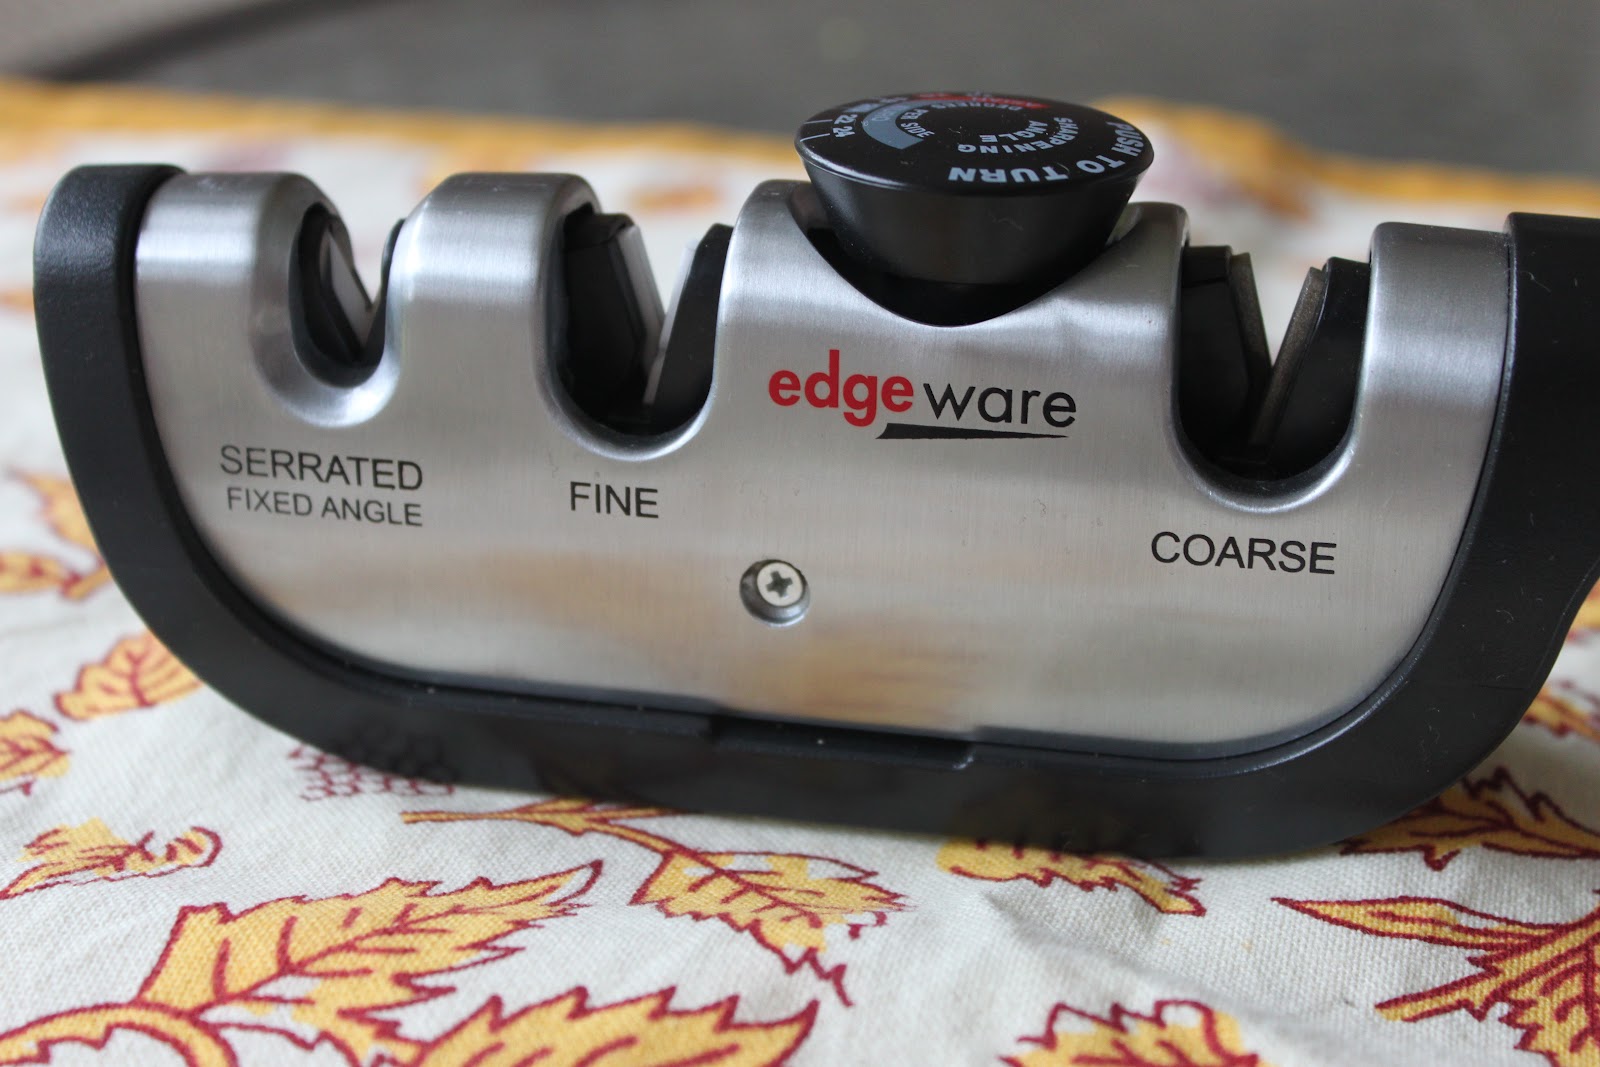 Edgeware's sharpener